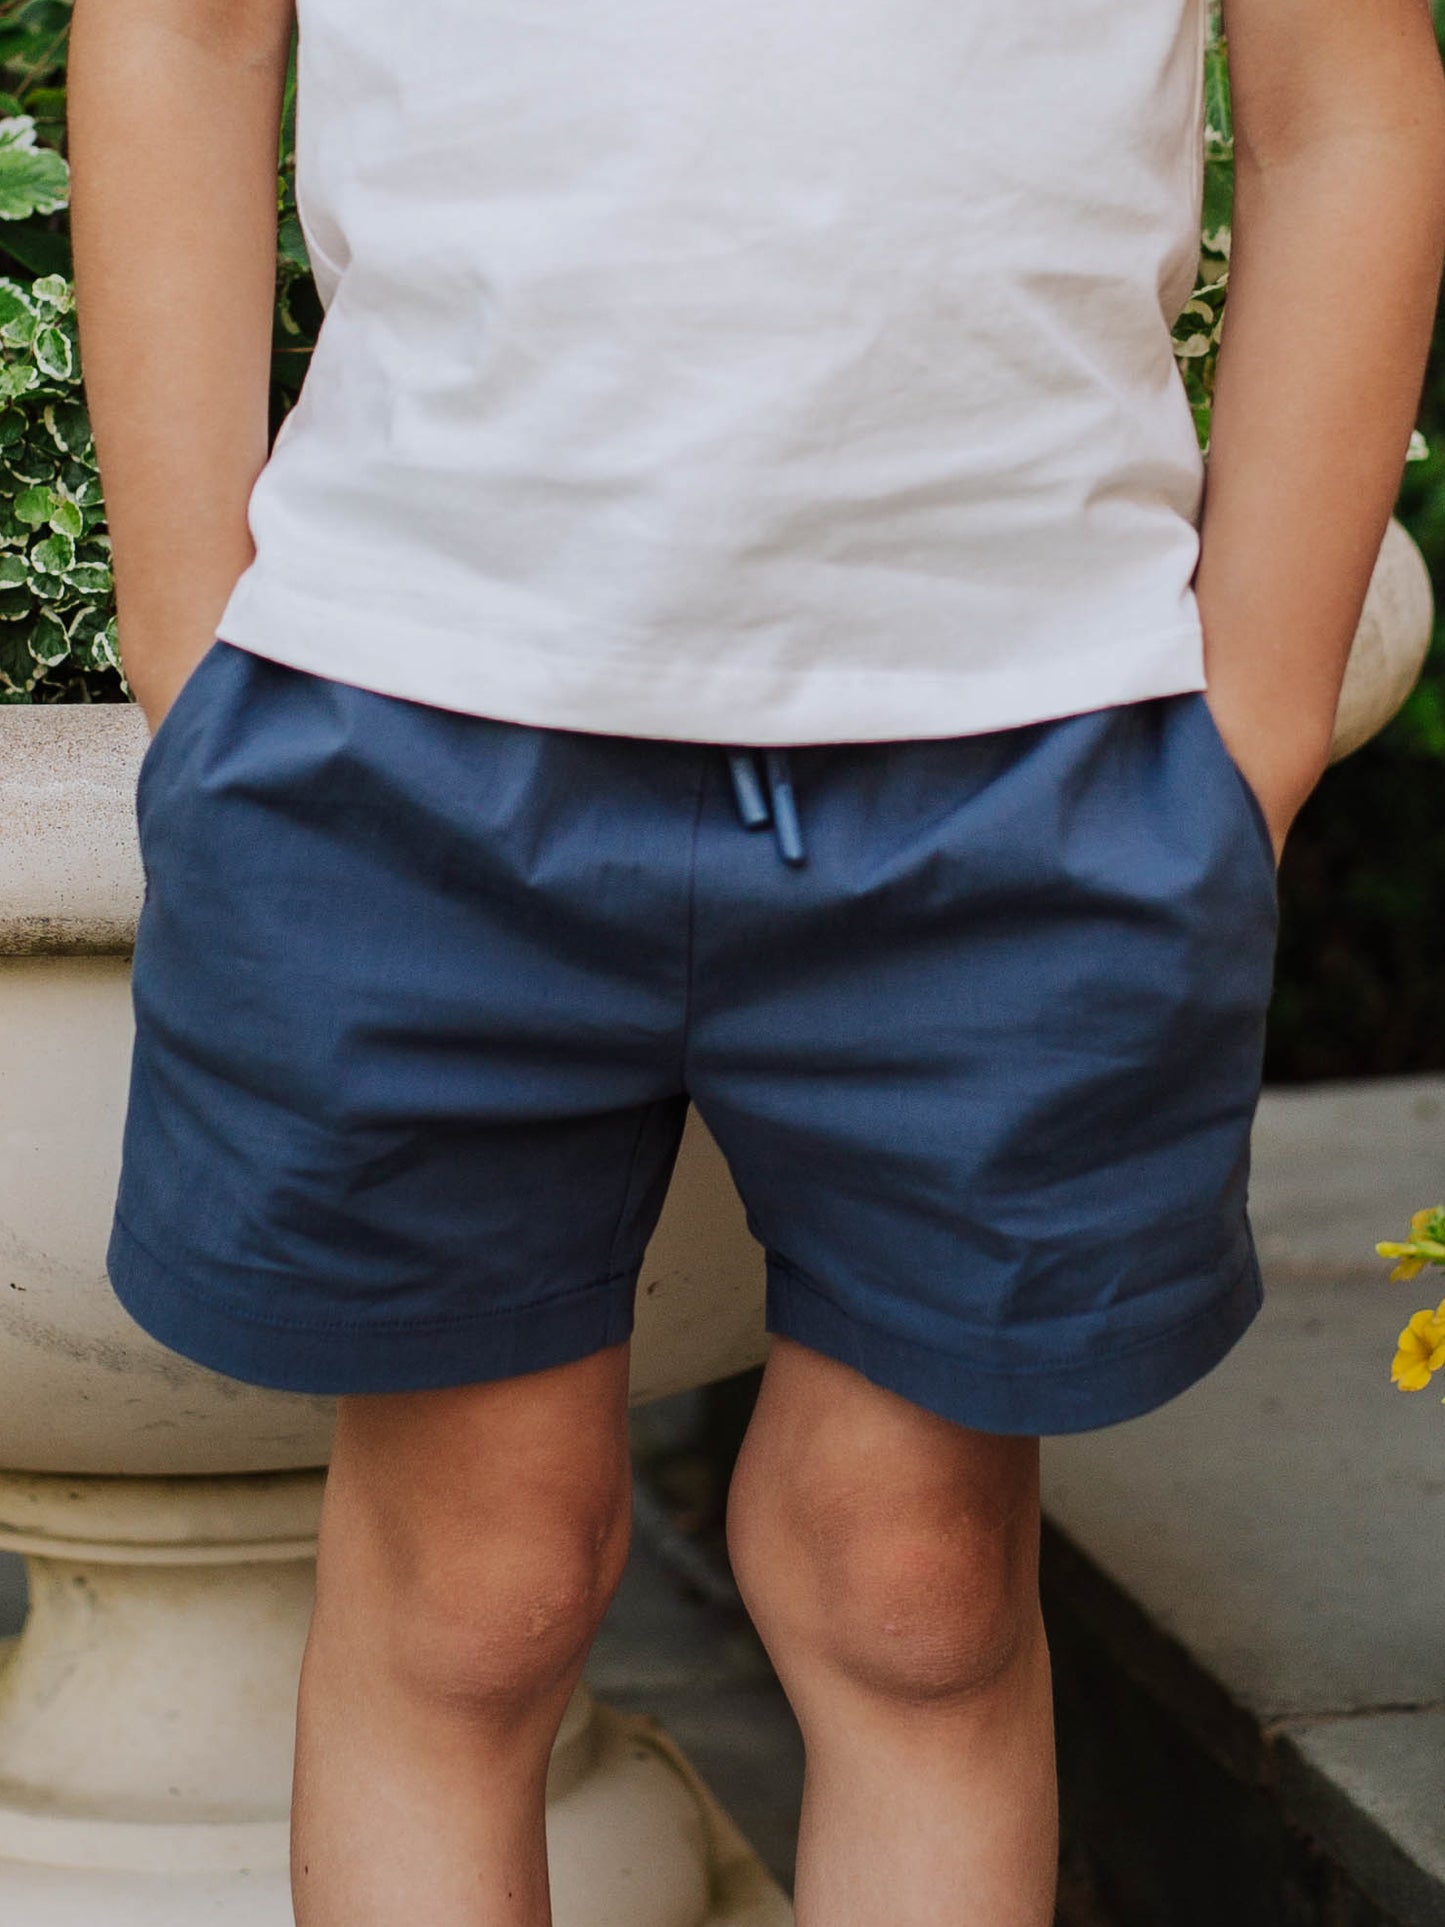 Boy's Shorts - Navy